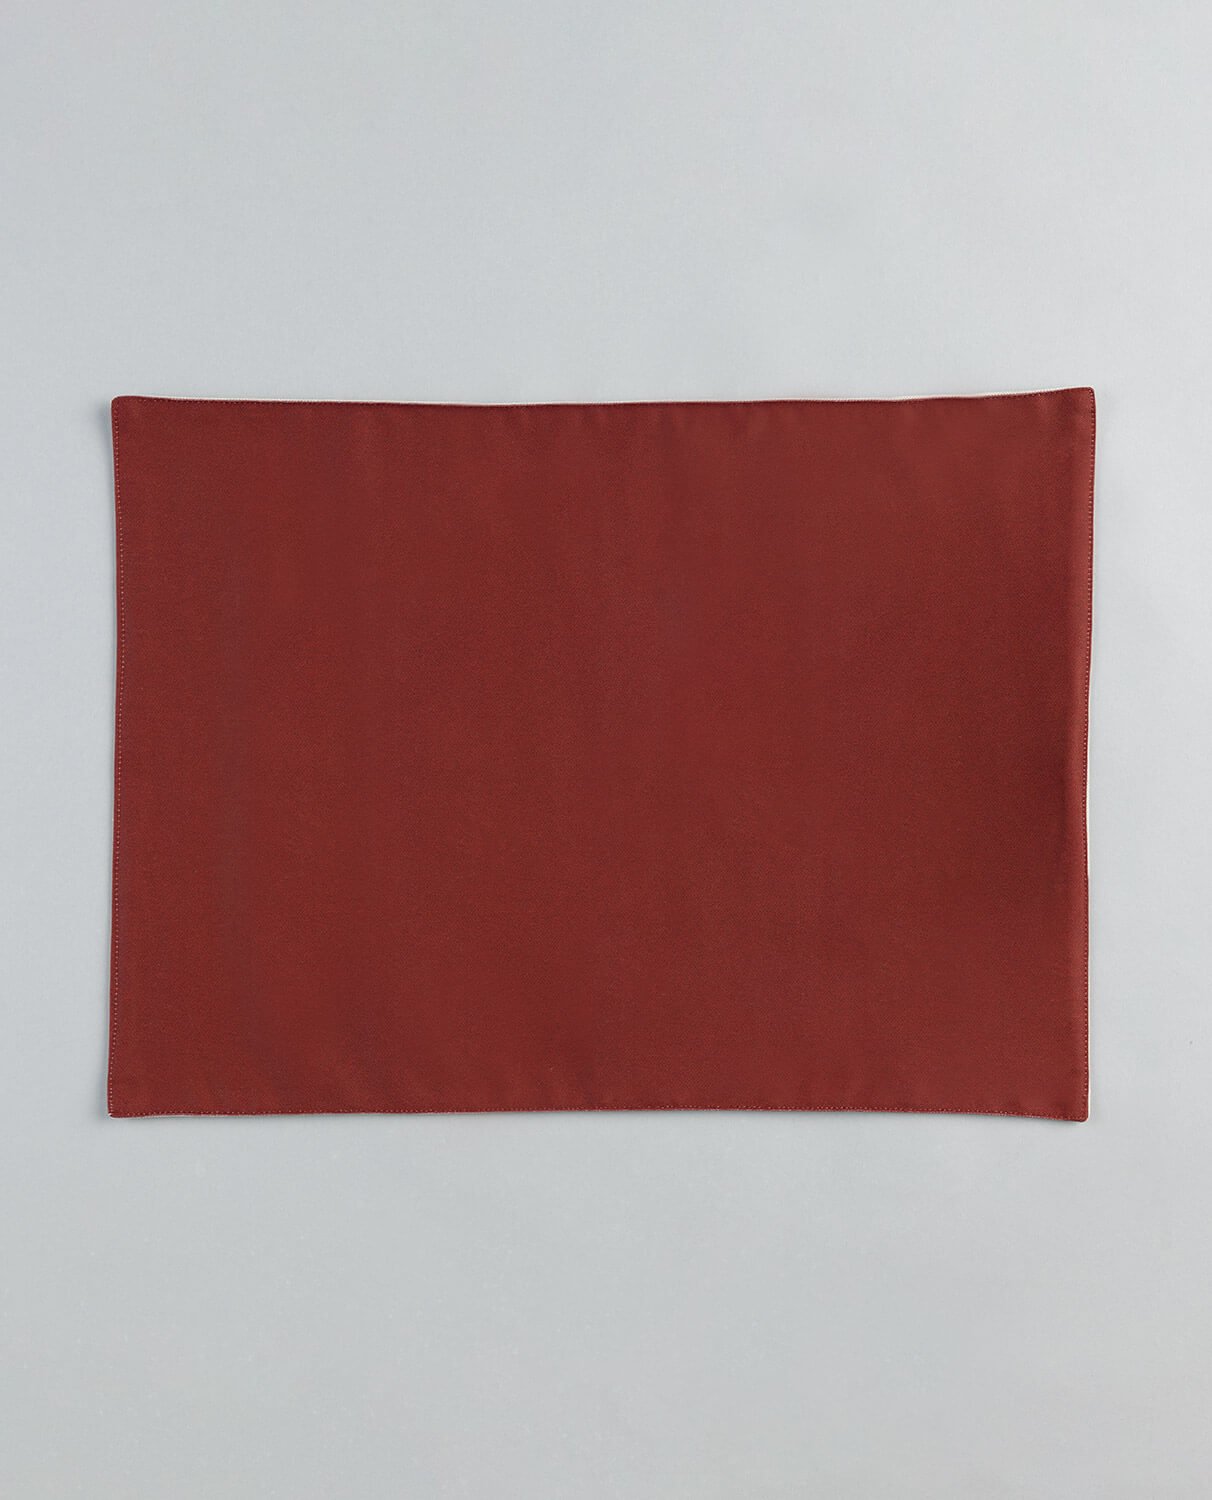 Tovaglietta in Cotone (35x50) Belen, immagine della galleria 1